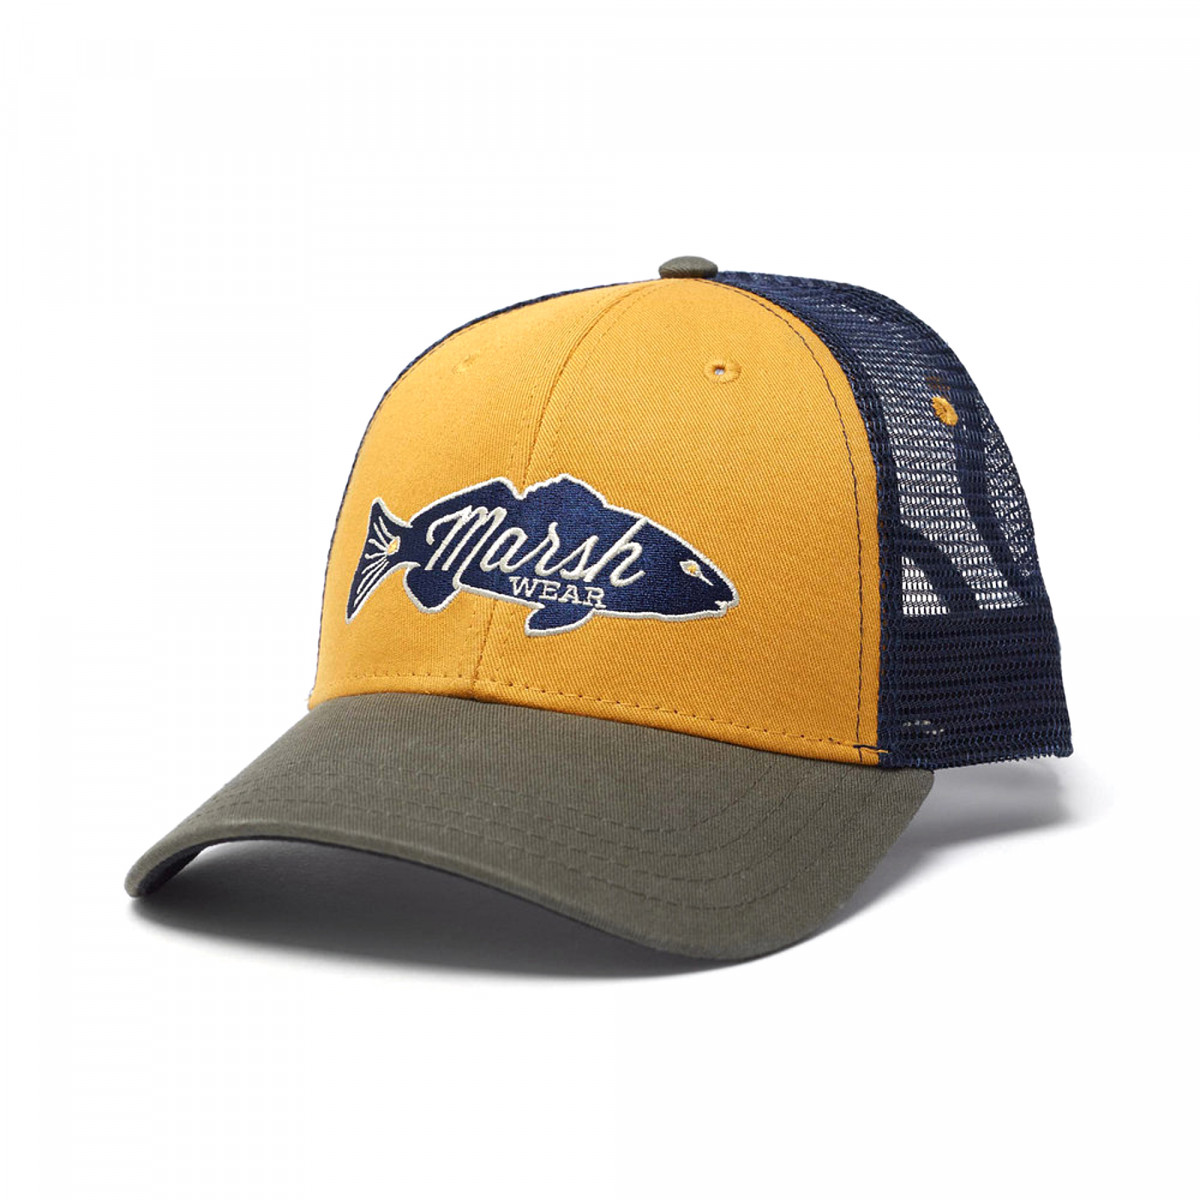 E-commerce photography of a baseball cap